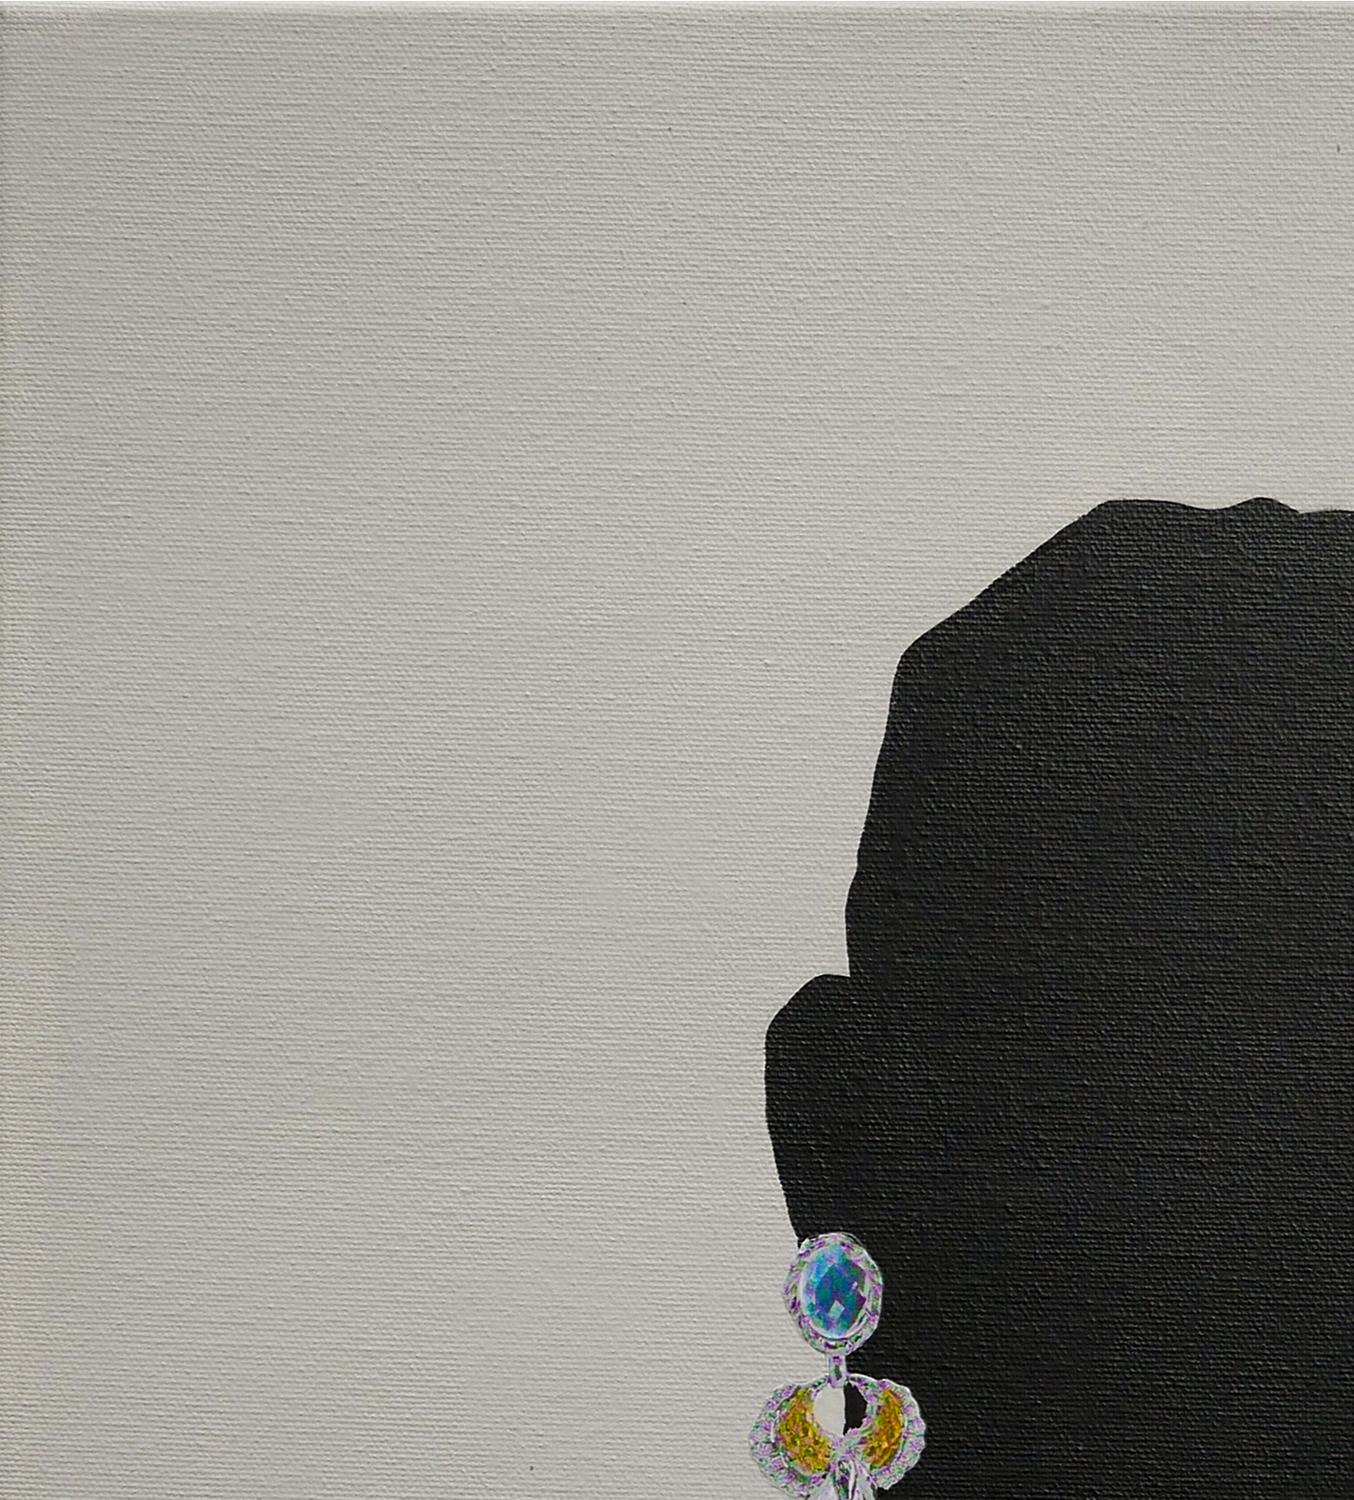 „Cal“ Graues & schwarzes abstraktes surrealistisches figuratives Gemälde eines Mannes mit Schmuck (Zeitgenössisch), Painting, von Scott Woodard